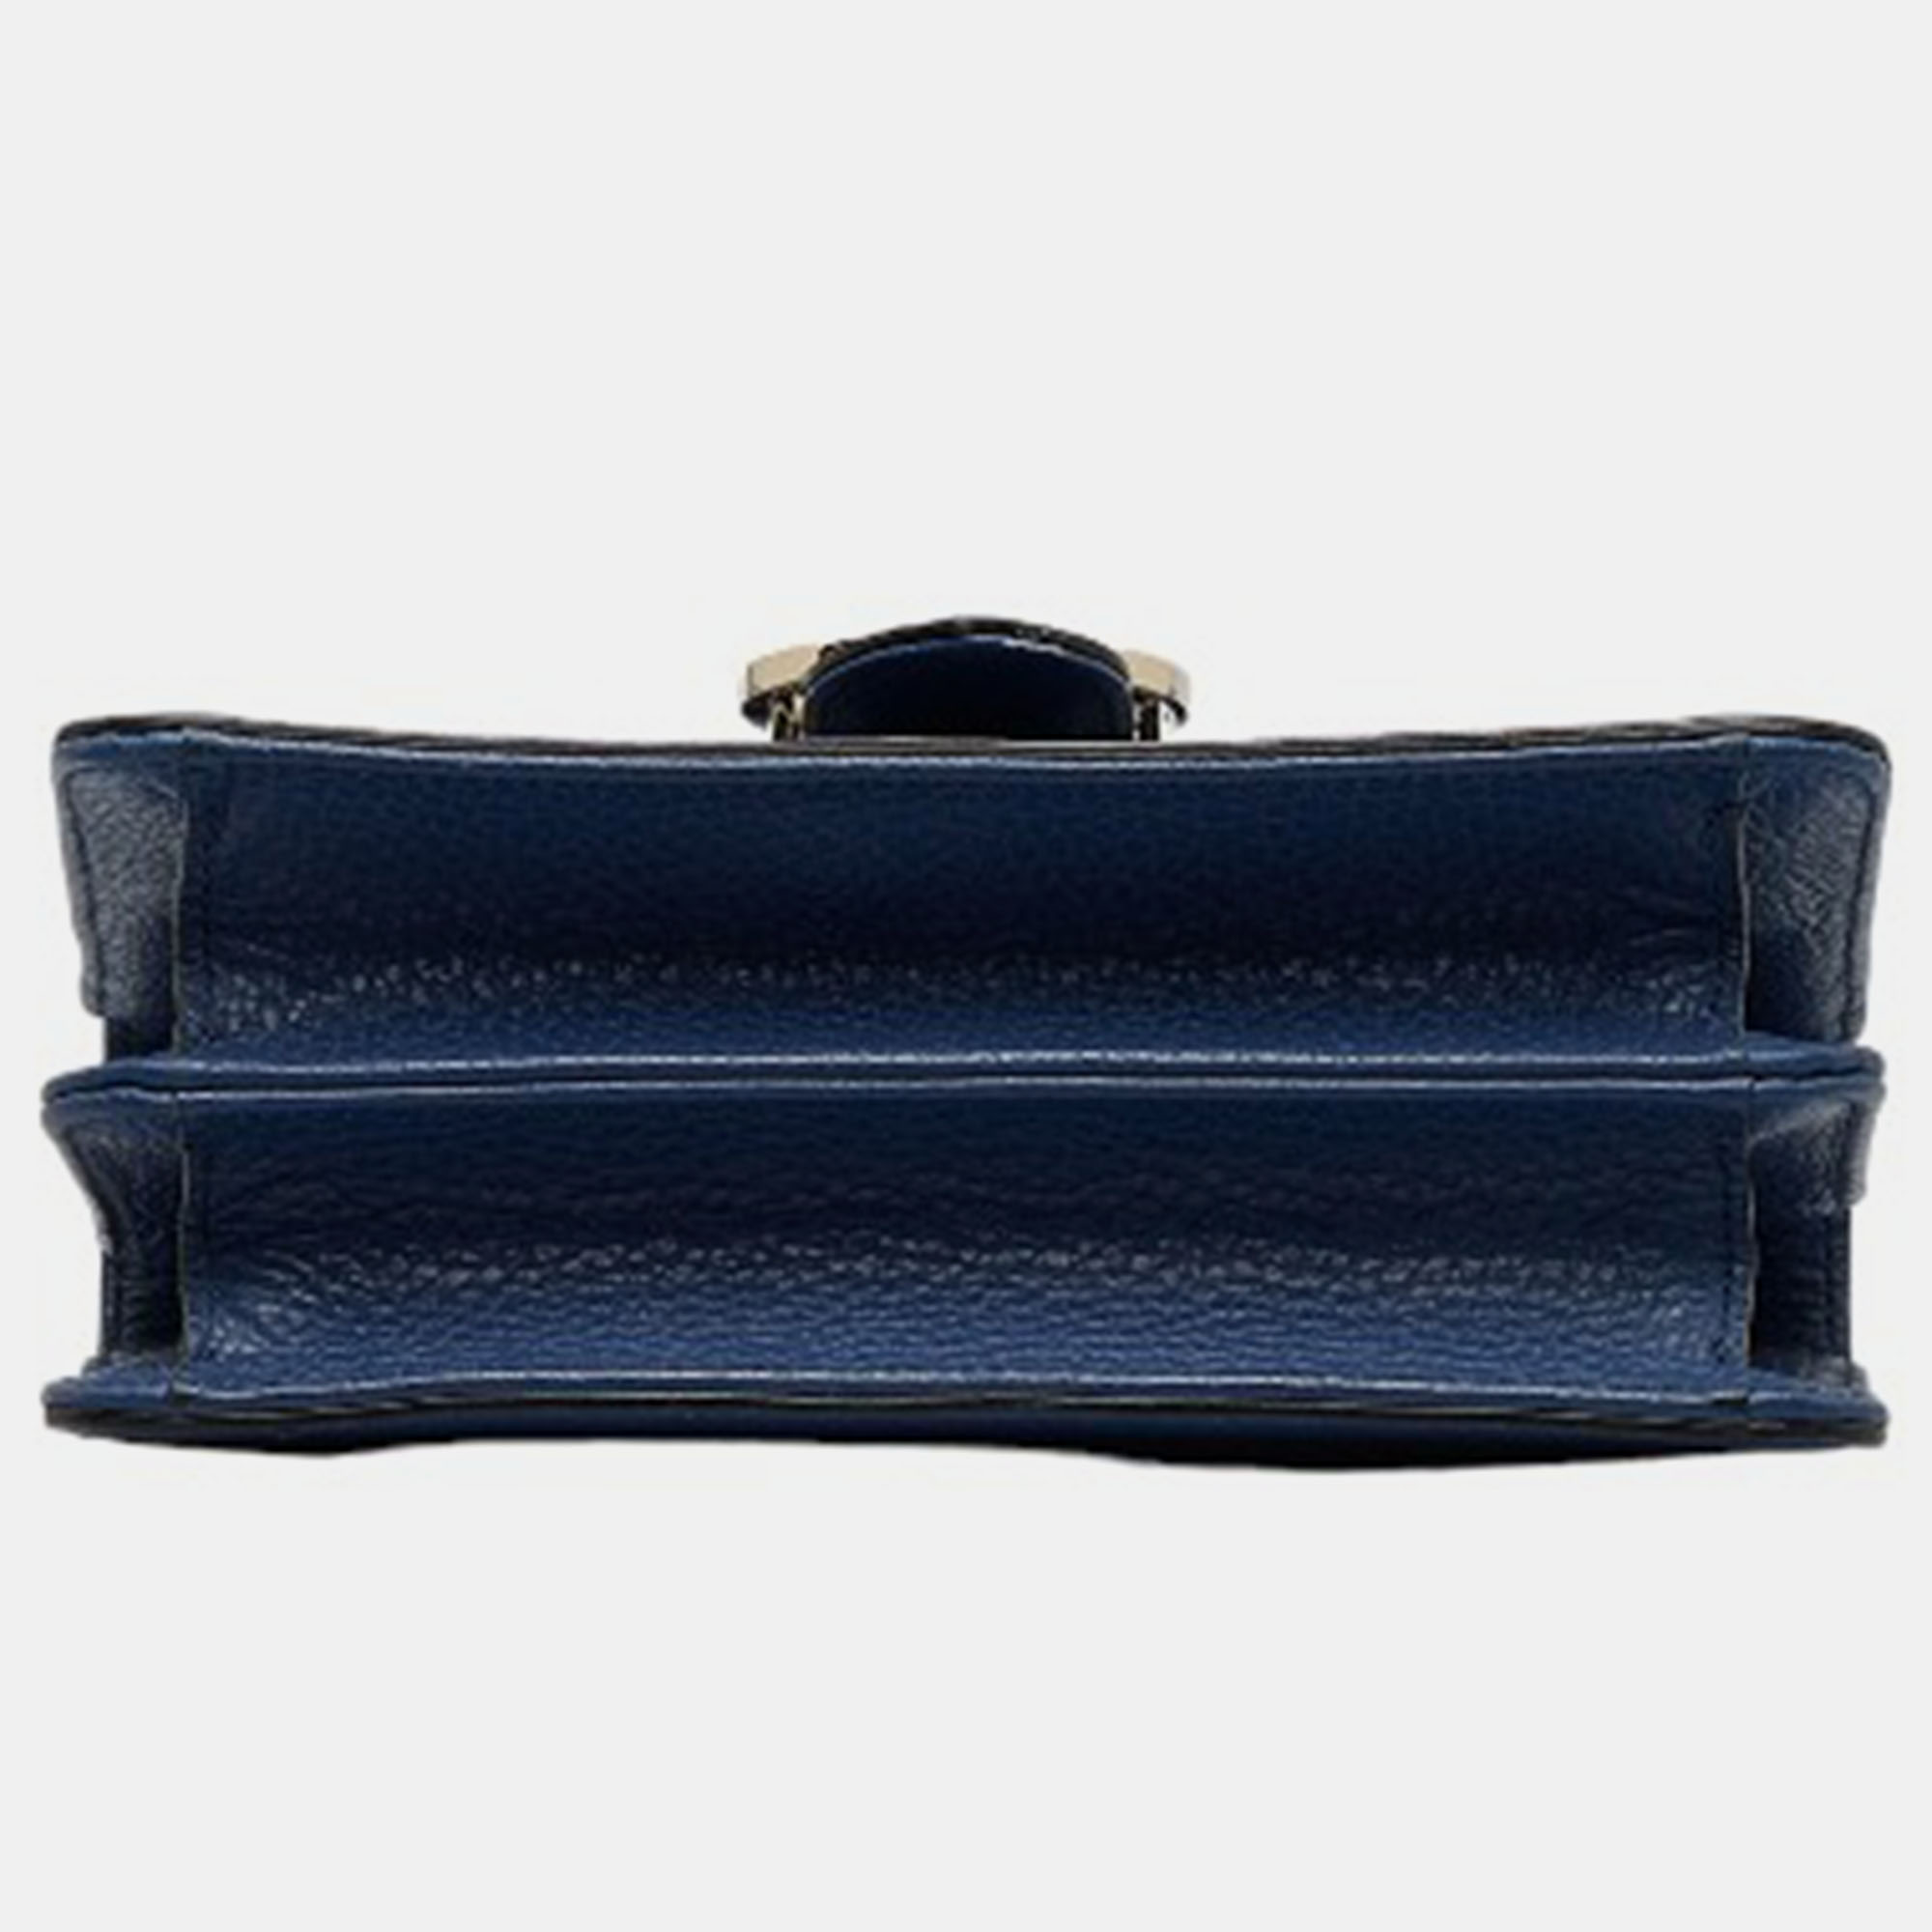 Gucci Blue Leather Small Dollar Interlocking G Shoulder Bag